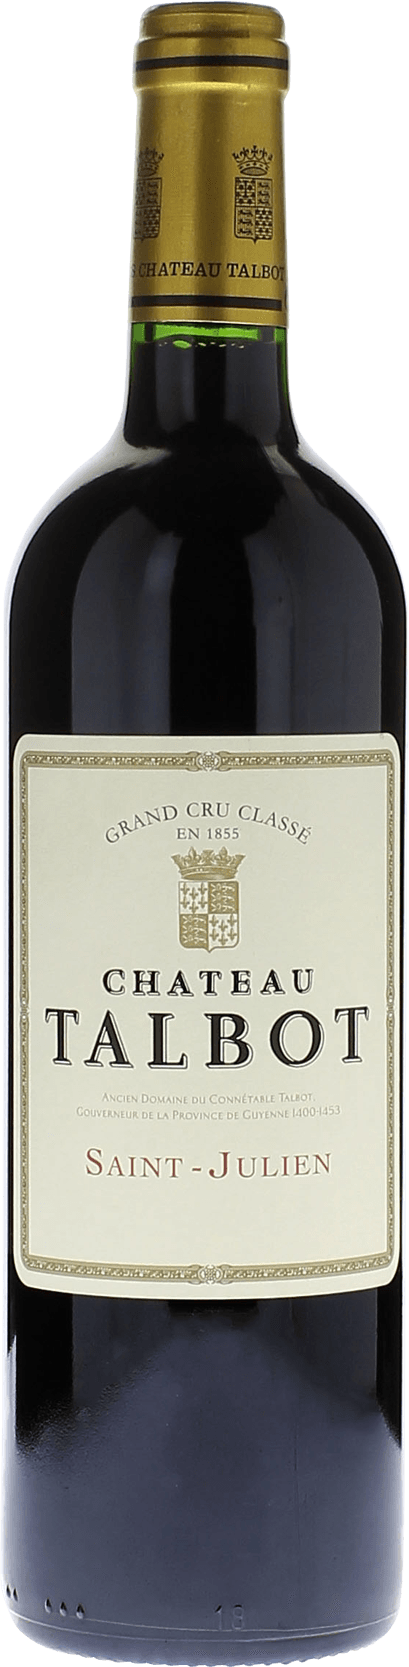 Talbot 2021 4me Grand cru class Saint-Julien, Bordeaux rouge